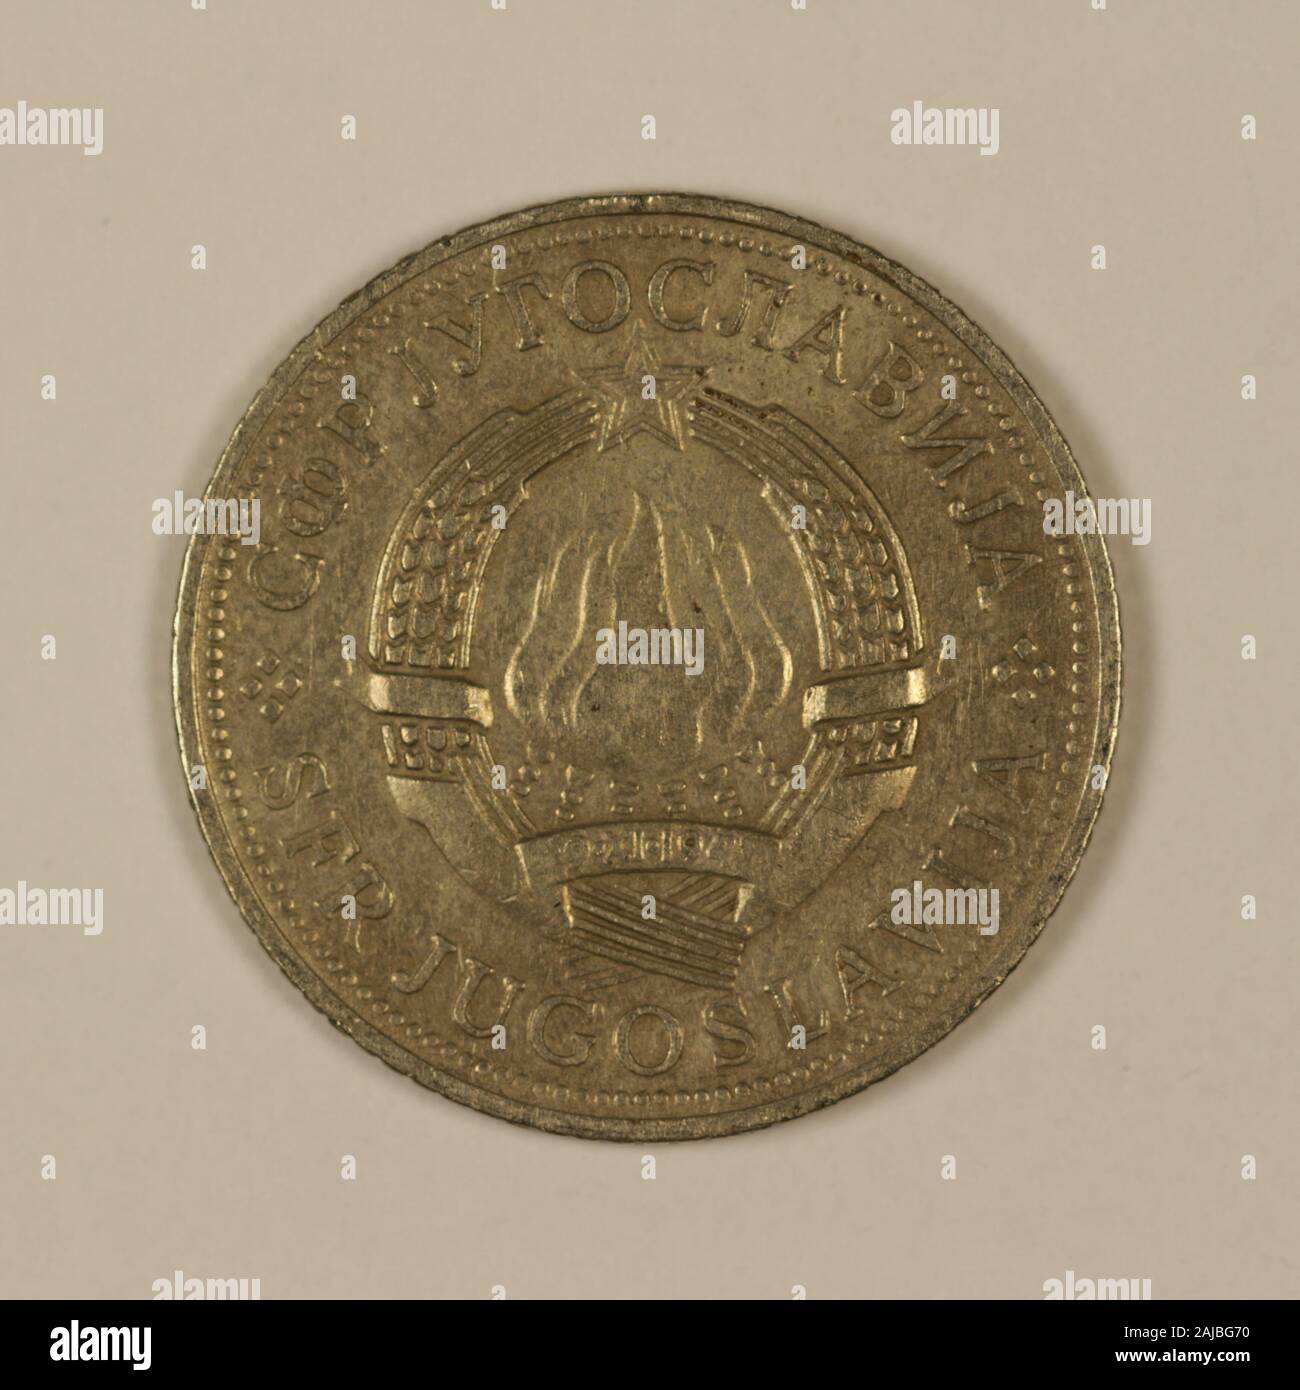 Rückseite einer ehemaligen Jugoslawischen 5 Dinar Münze Stock Photo